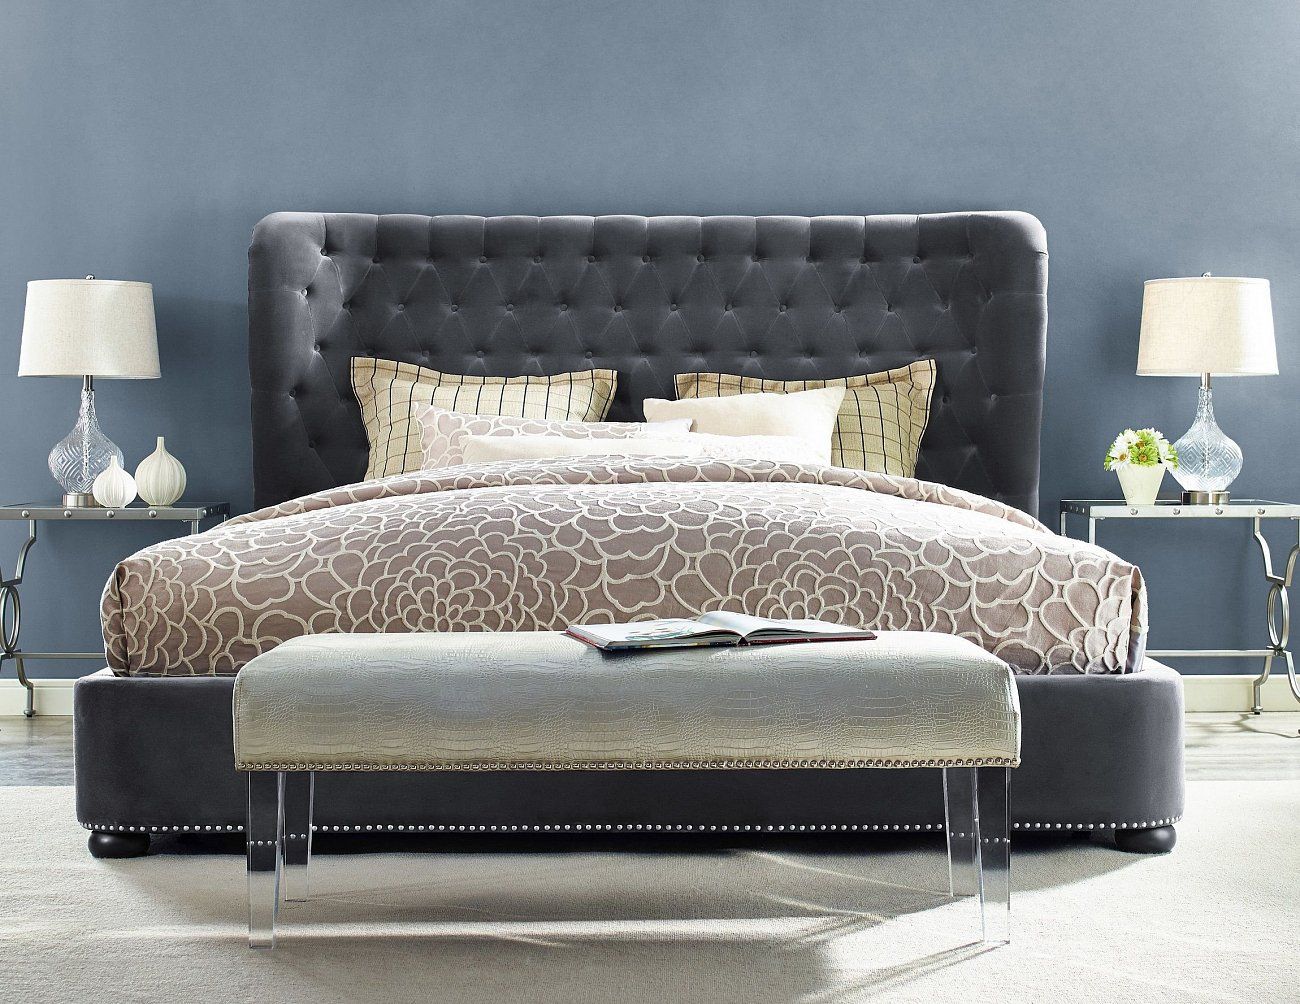 Кровать двуспальная с мягким изголовьем 180х200 см светло-серая Henbord